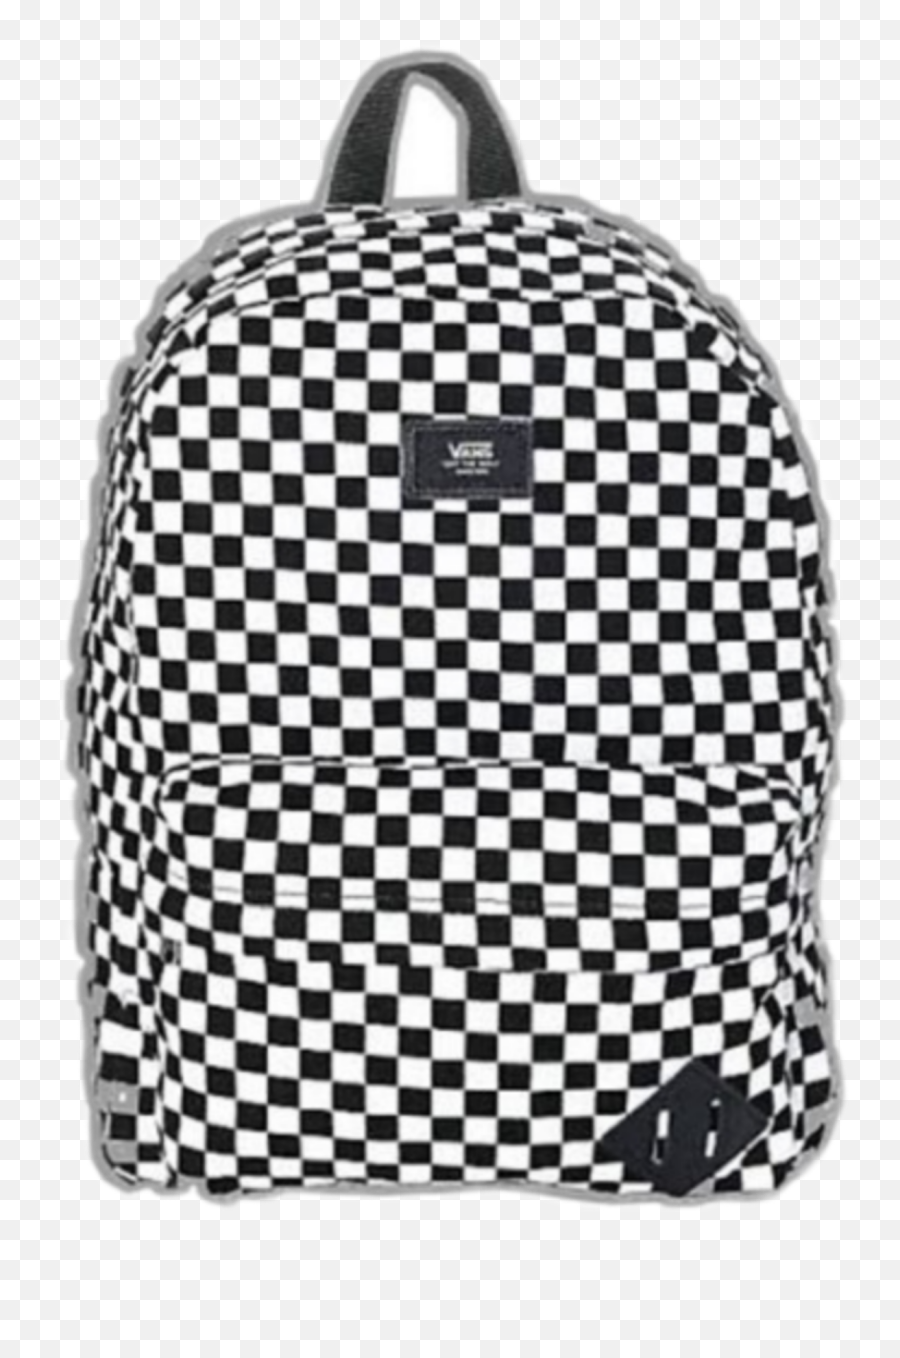 Vans Backpack White Sticker - Mochila Vans Cuadros Blanco Y Negro Emoji,Black Emoji Backpack